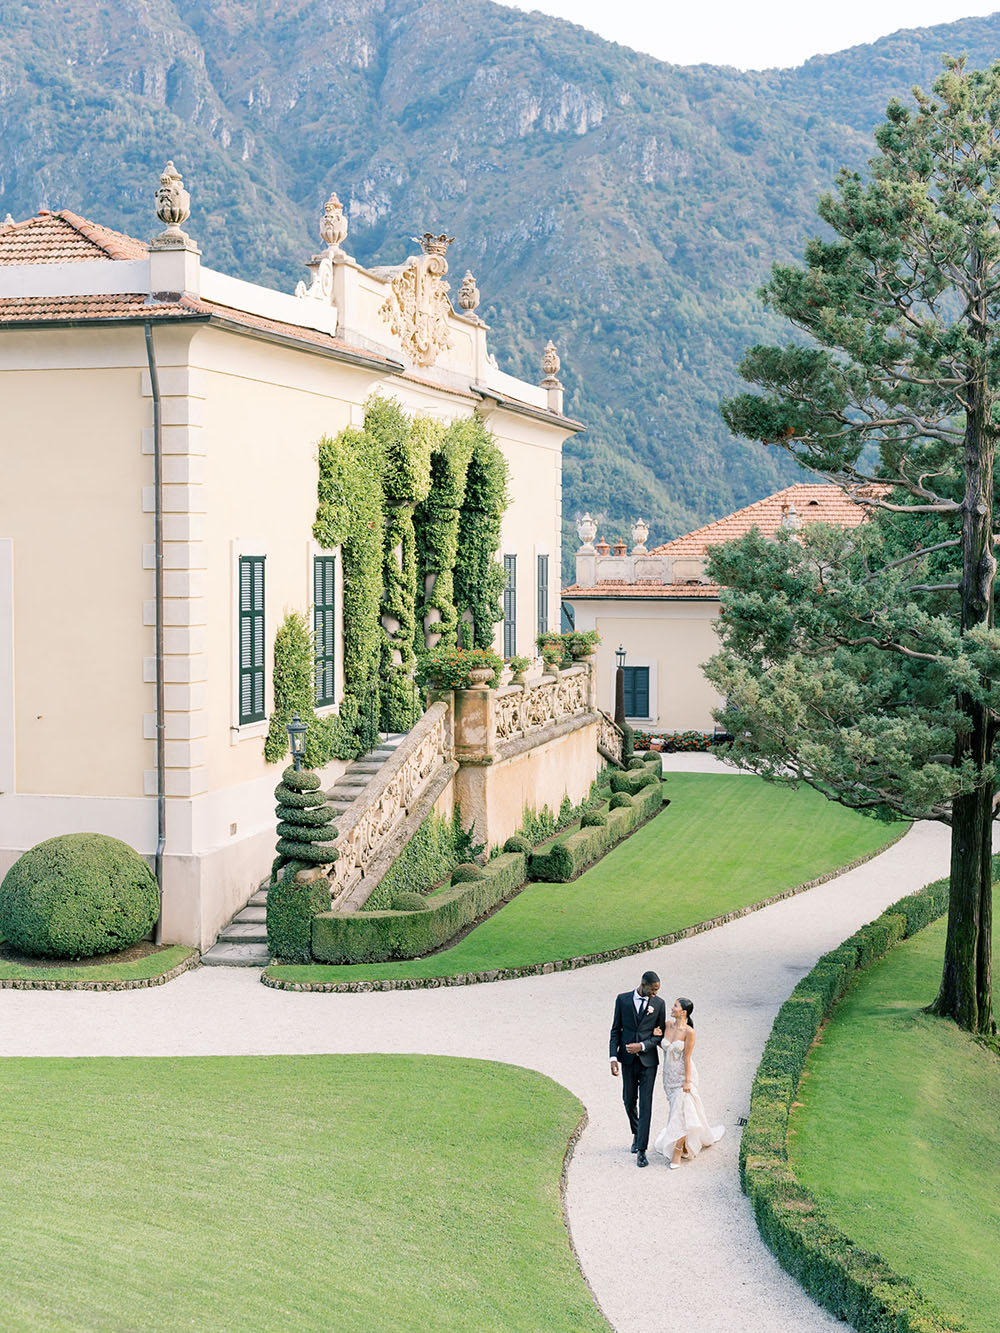 Romantic and refined Italian wedding portrait at a Lake Como villa